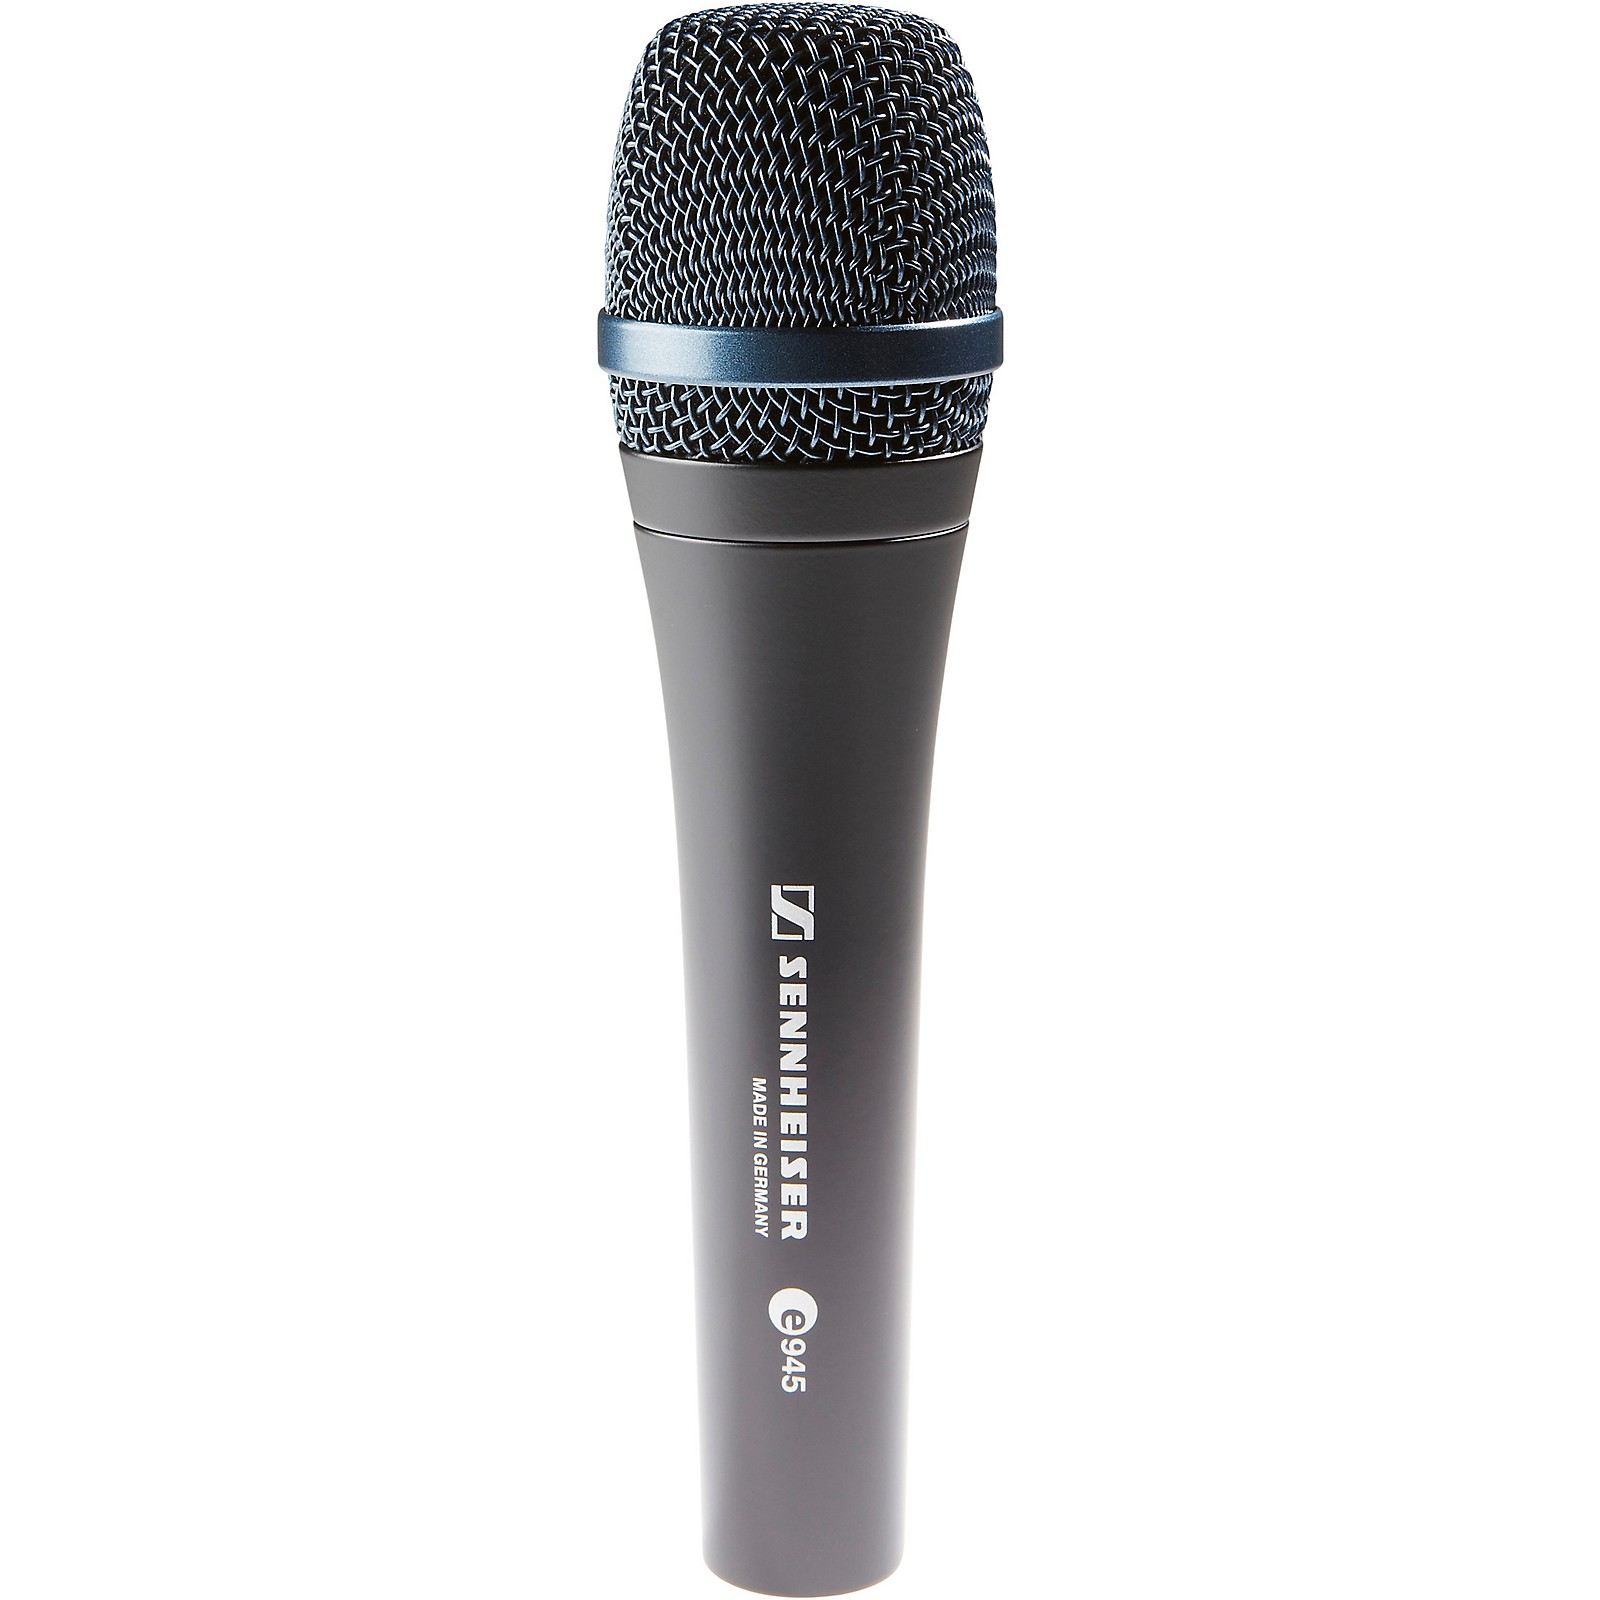 Sennheiser Sennheiser e 945 Supercardioid Dynamic Microphone